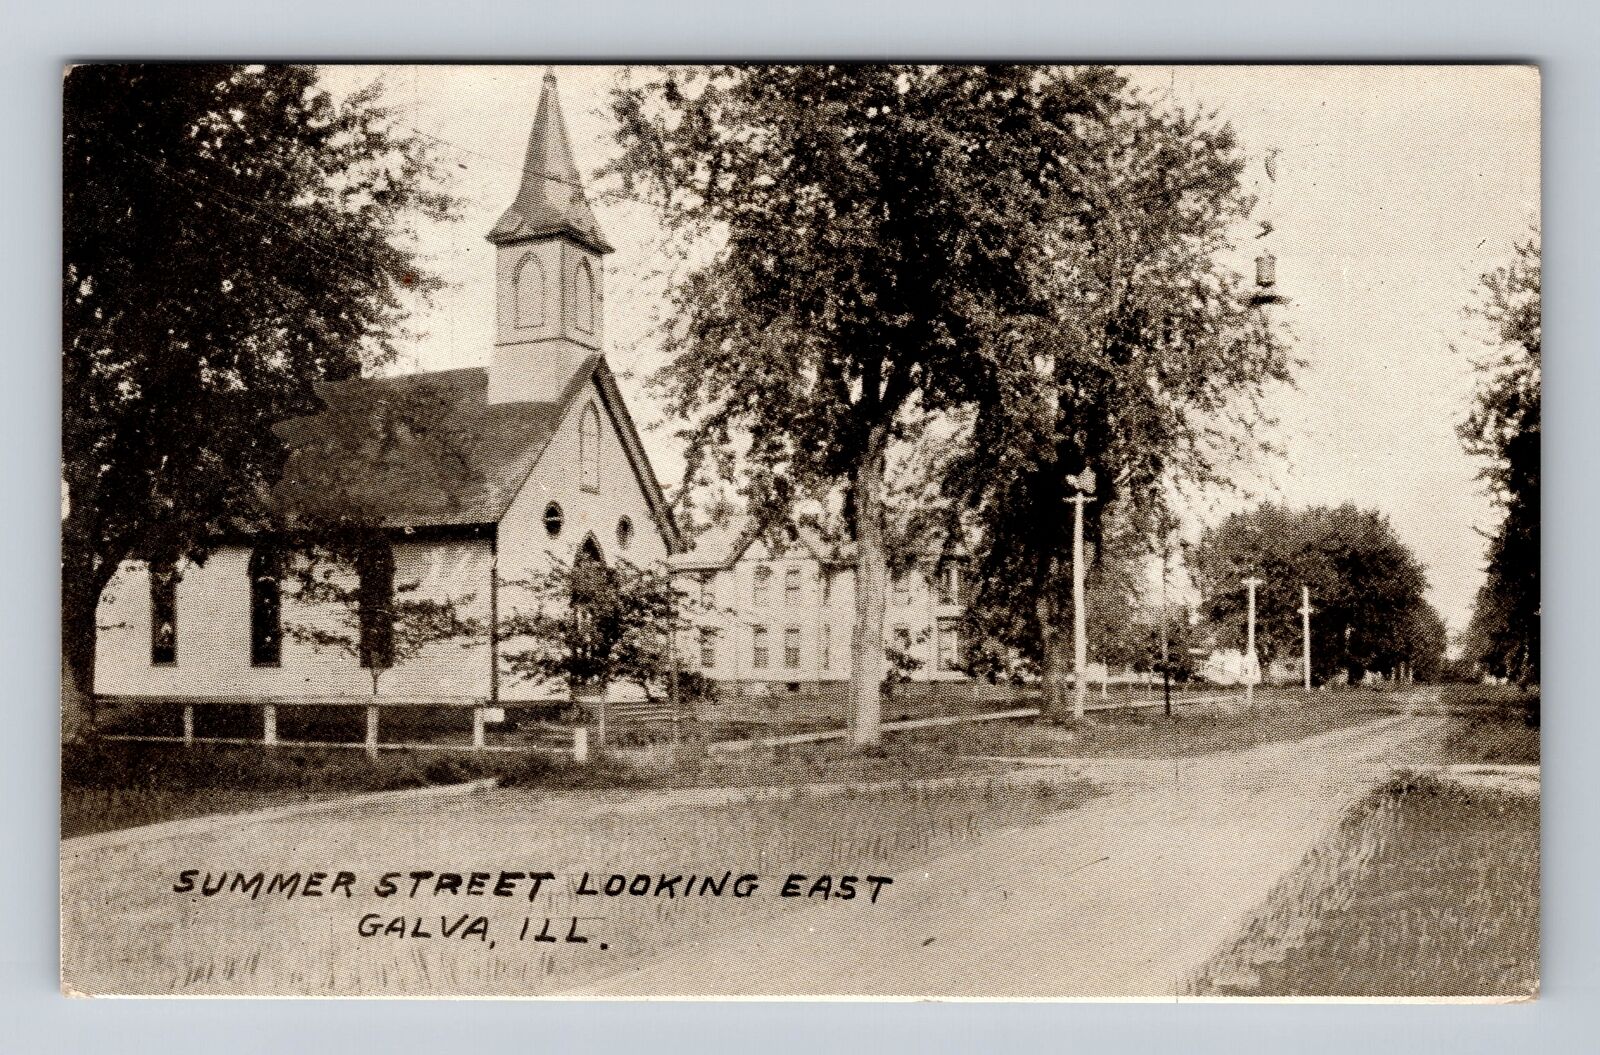 Galva IL-Illinois, Summer Street Looking East, Church, Vintage Postcard